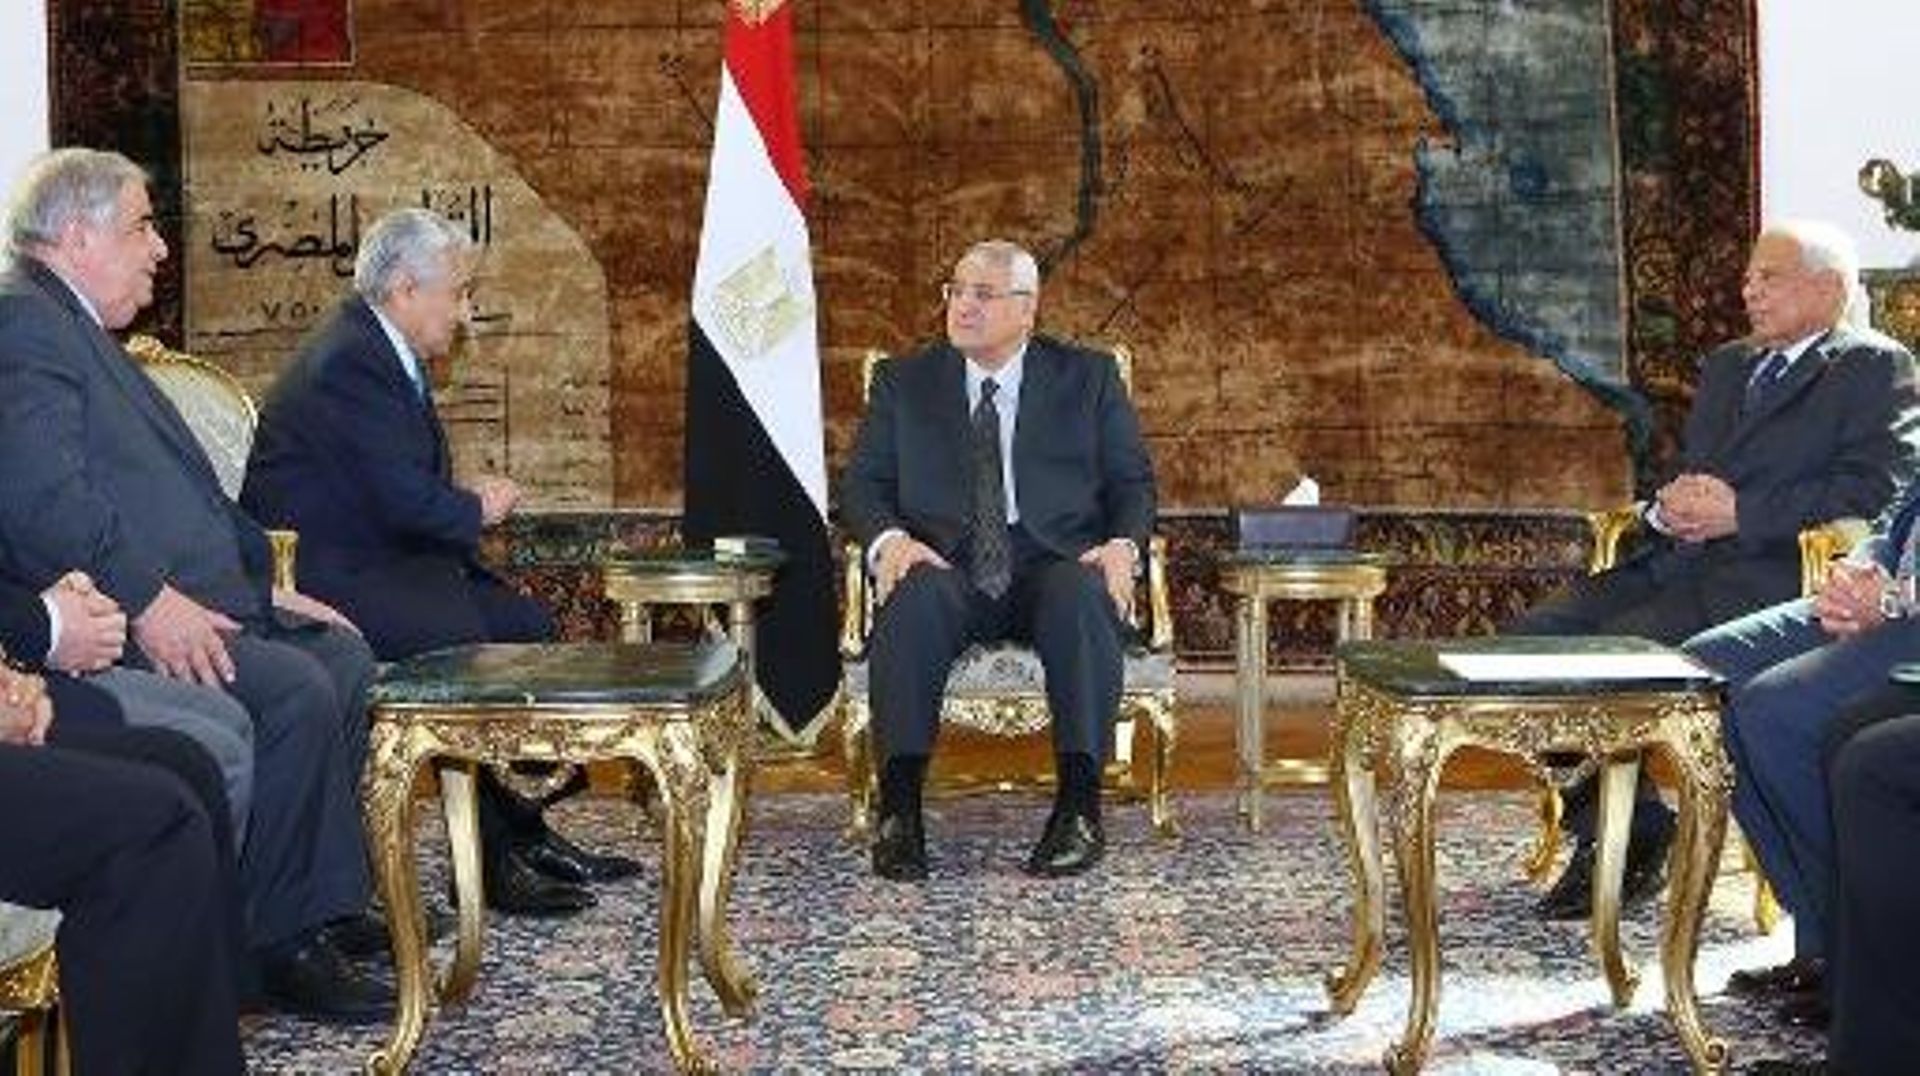 Le président égyptien par intérim Adly Mansour (C) et le Premier ministre par intérim Hazem el-Beblawi (D)